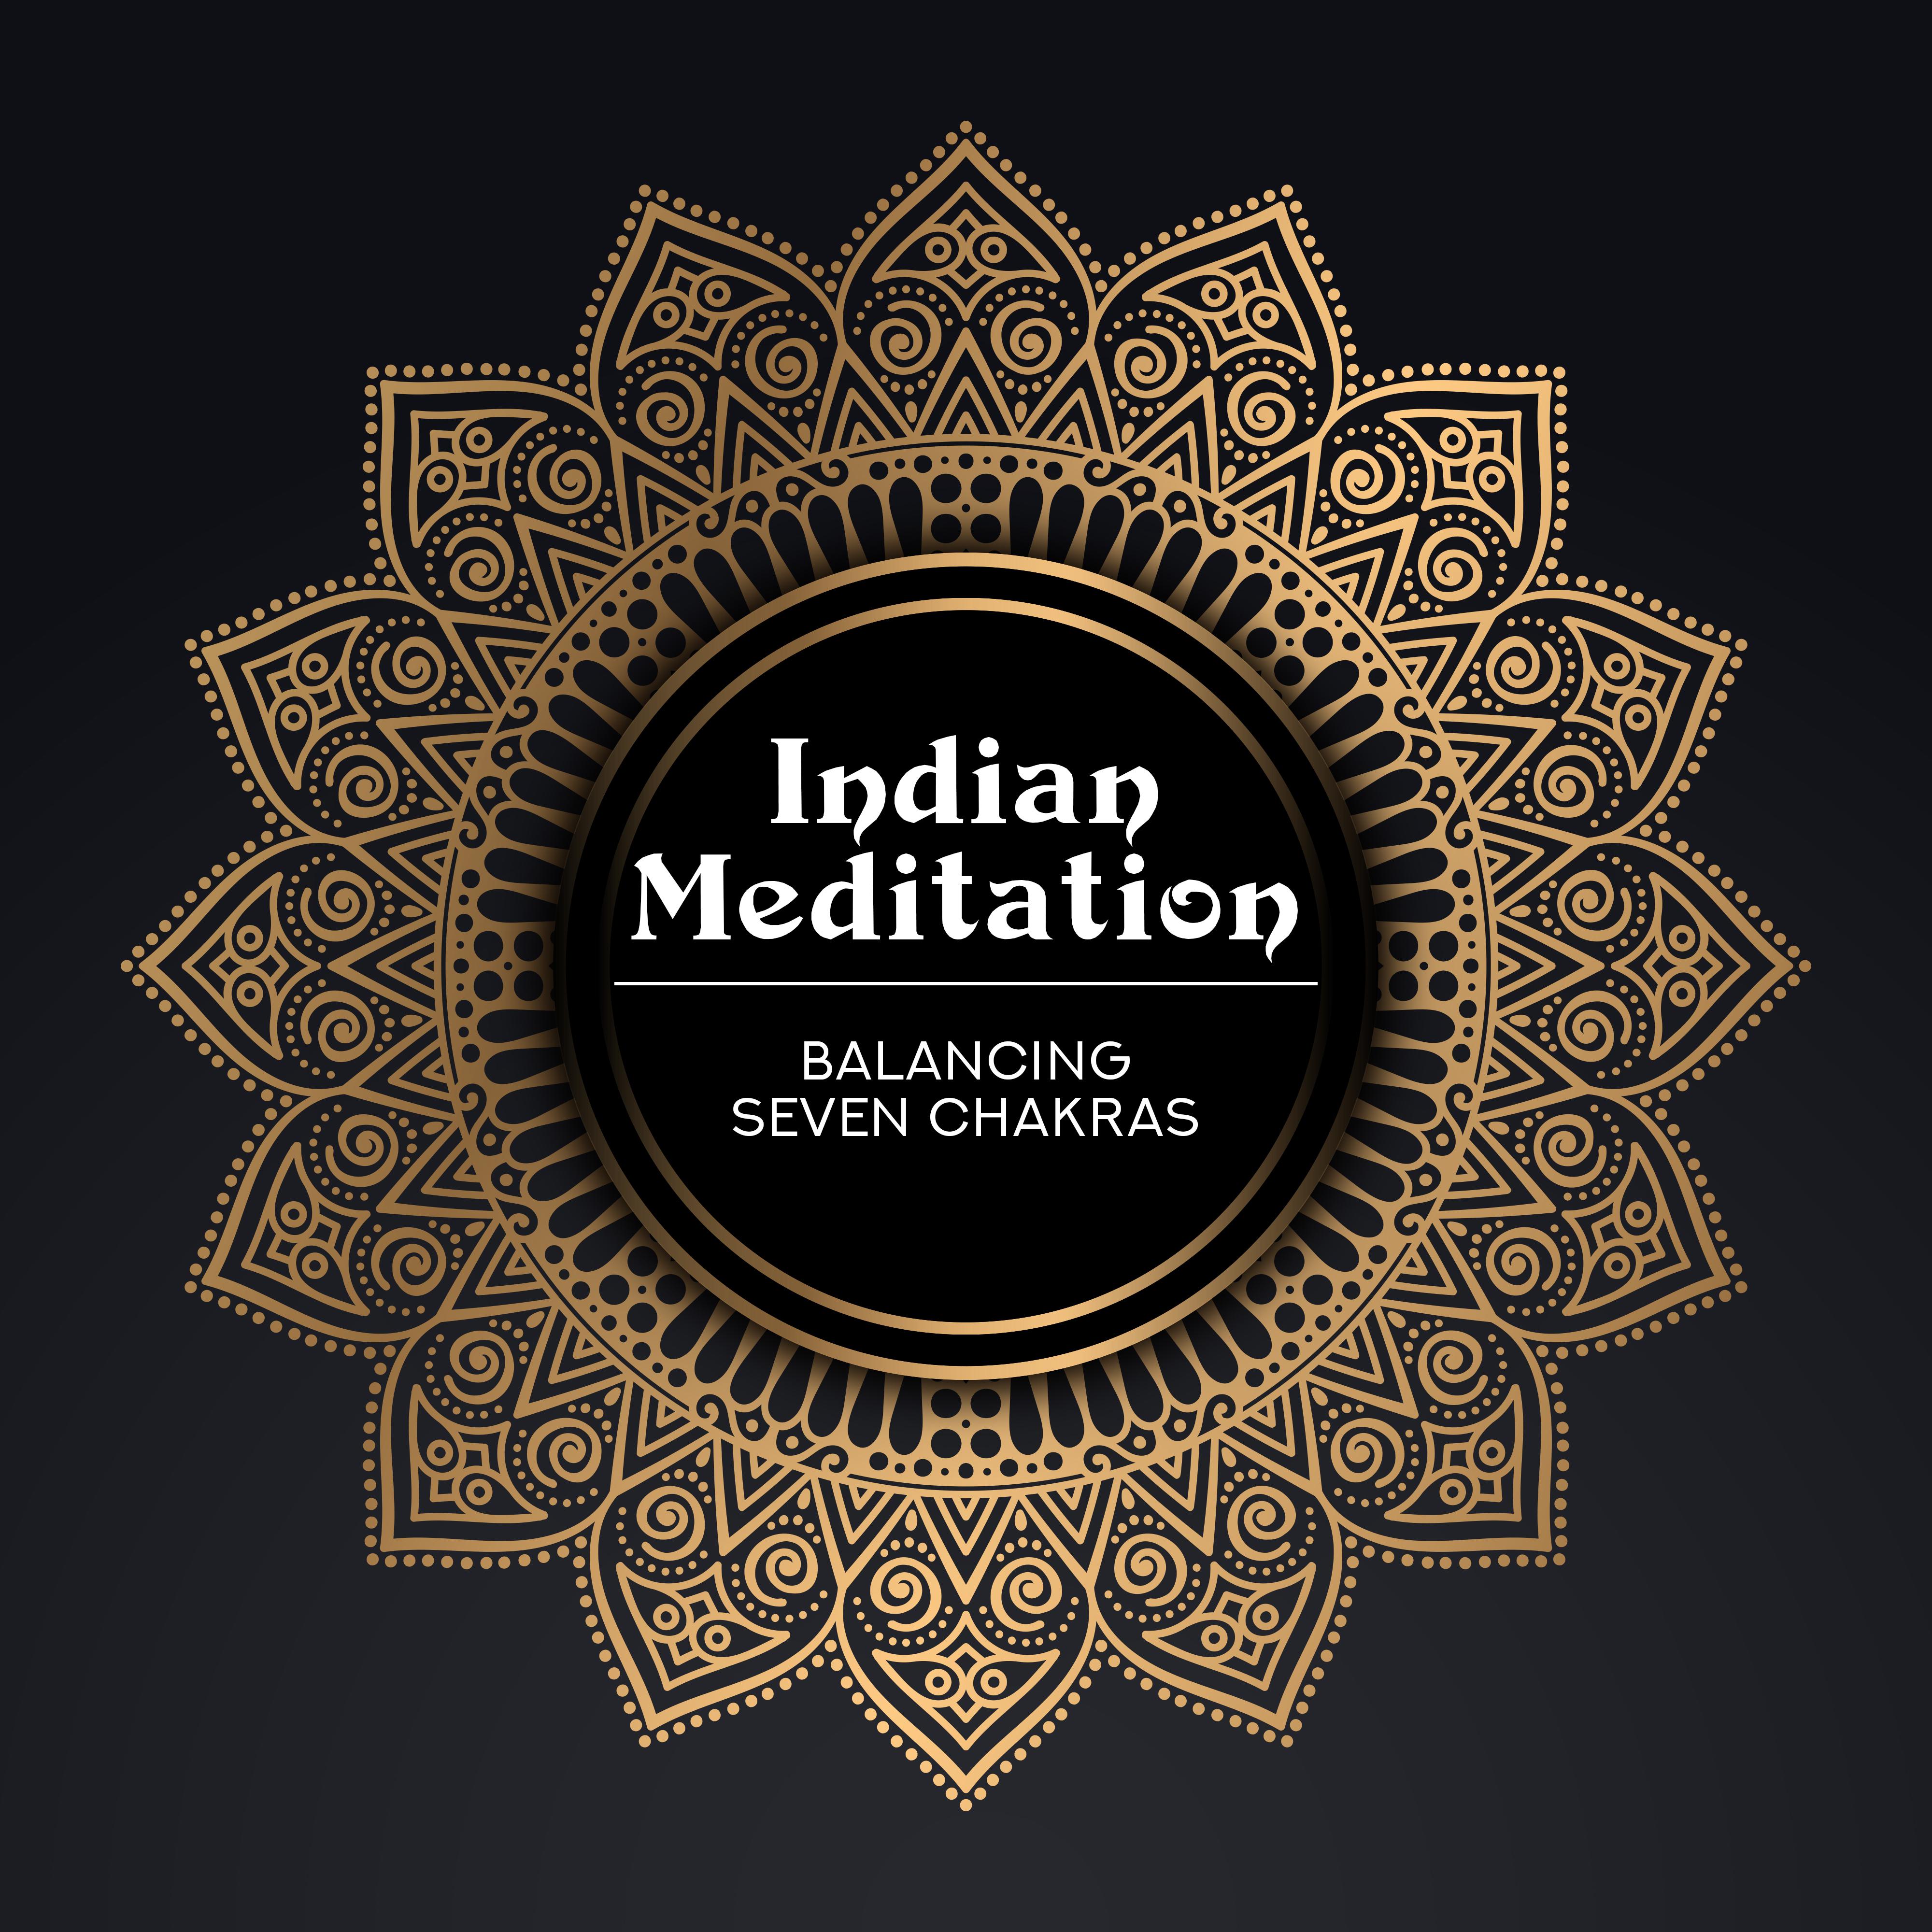 Indian Meditation Balancing Seven Chakras